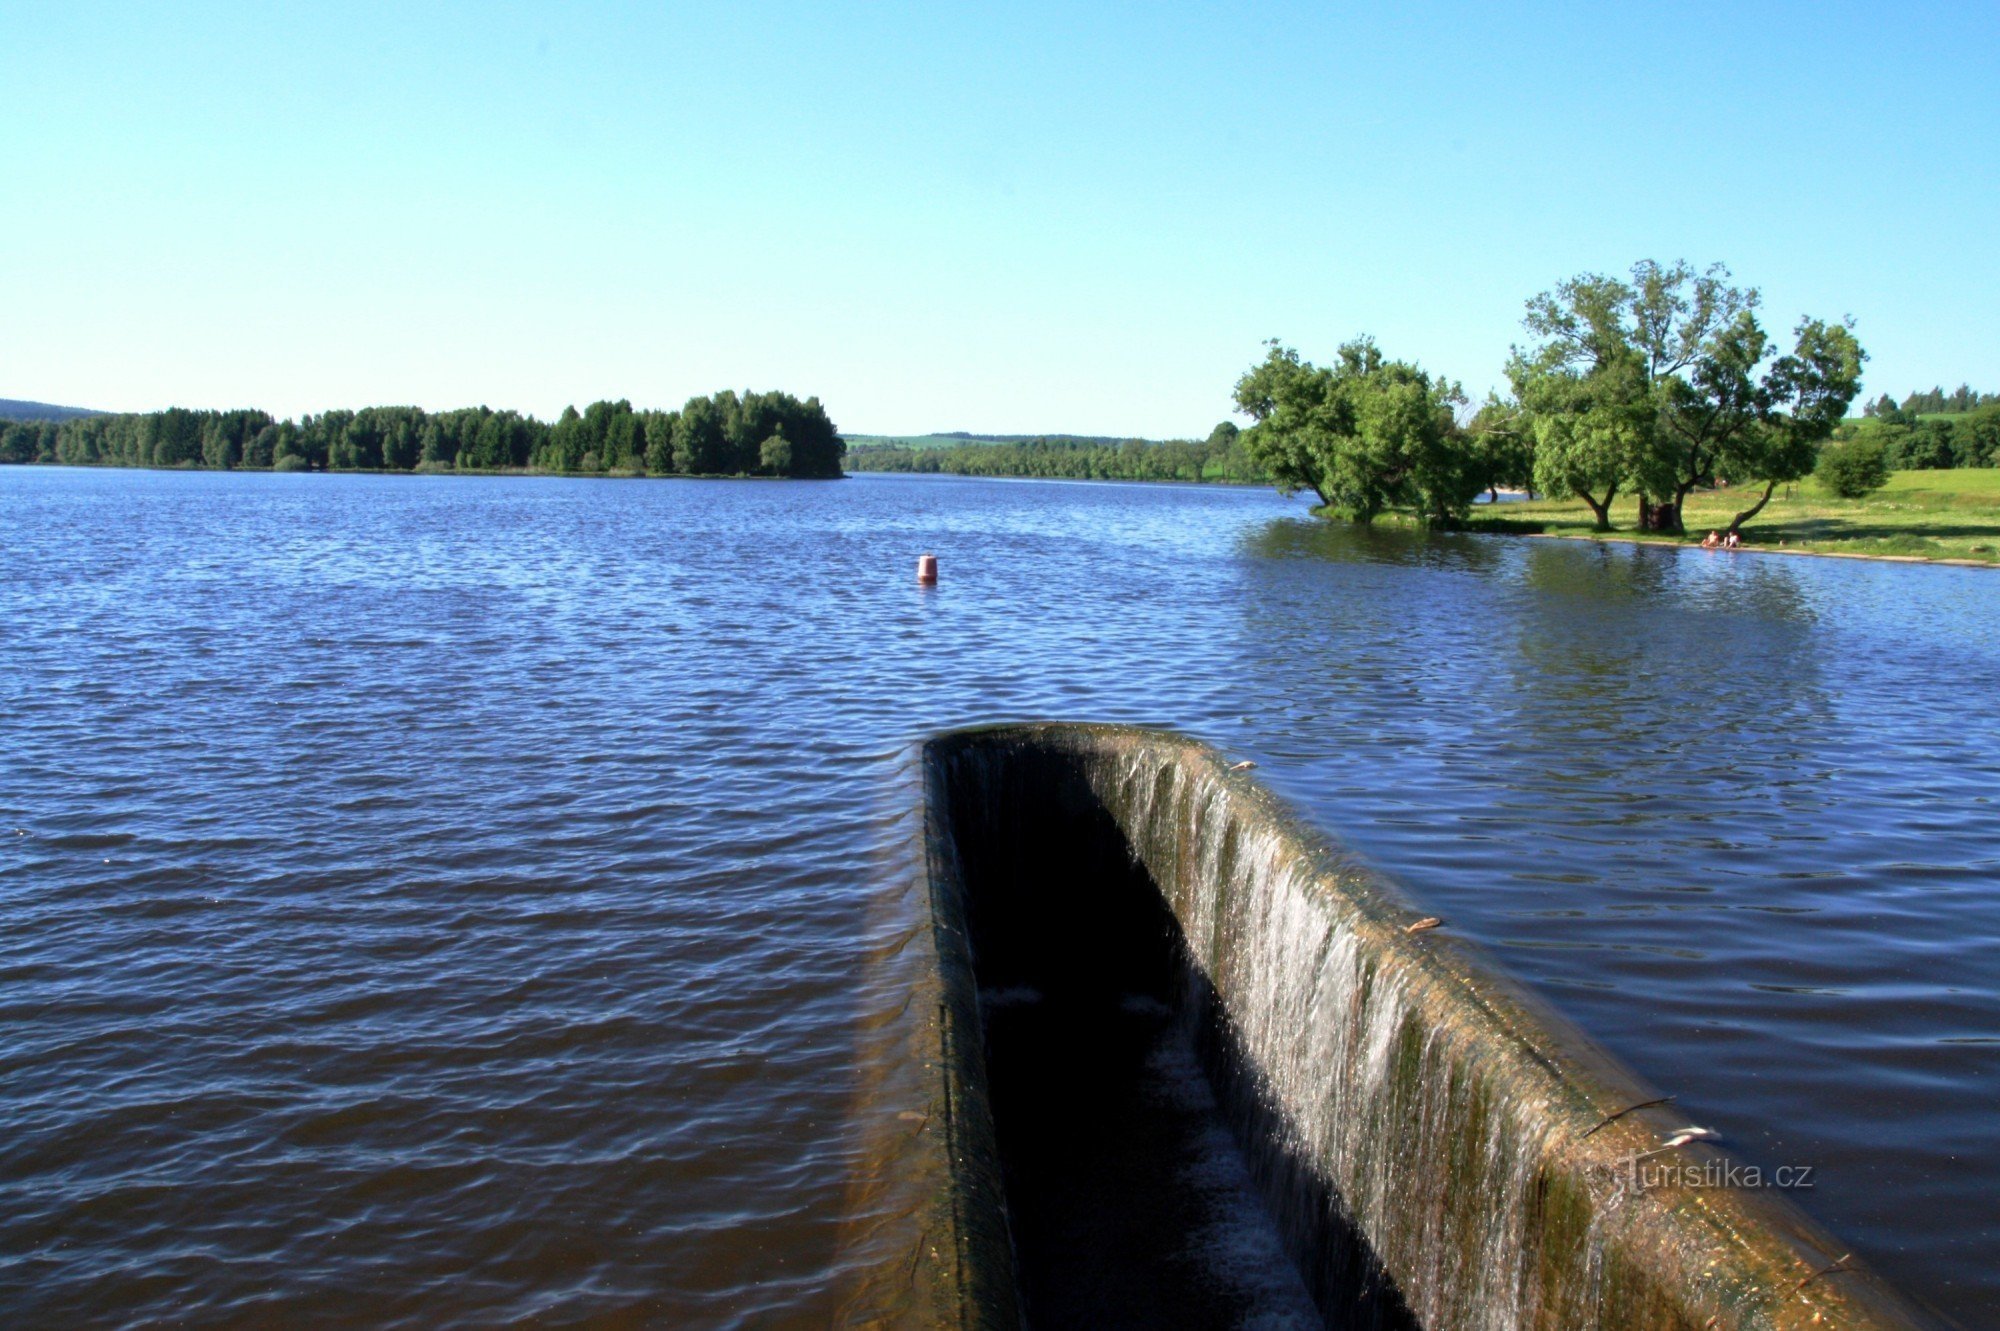 Pilsk water reservoir